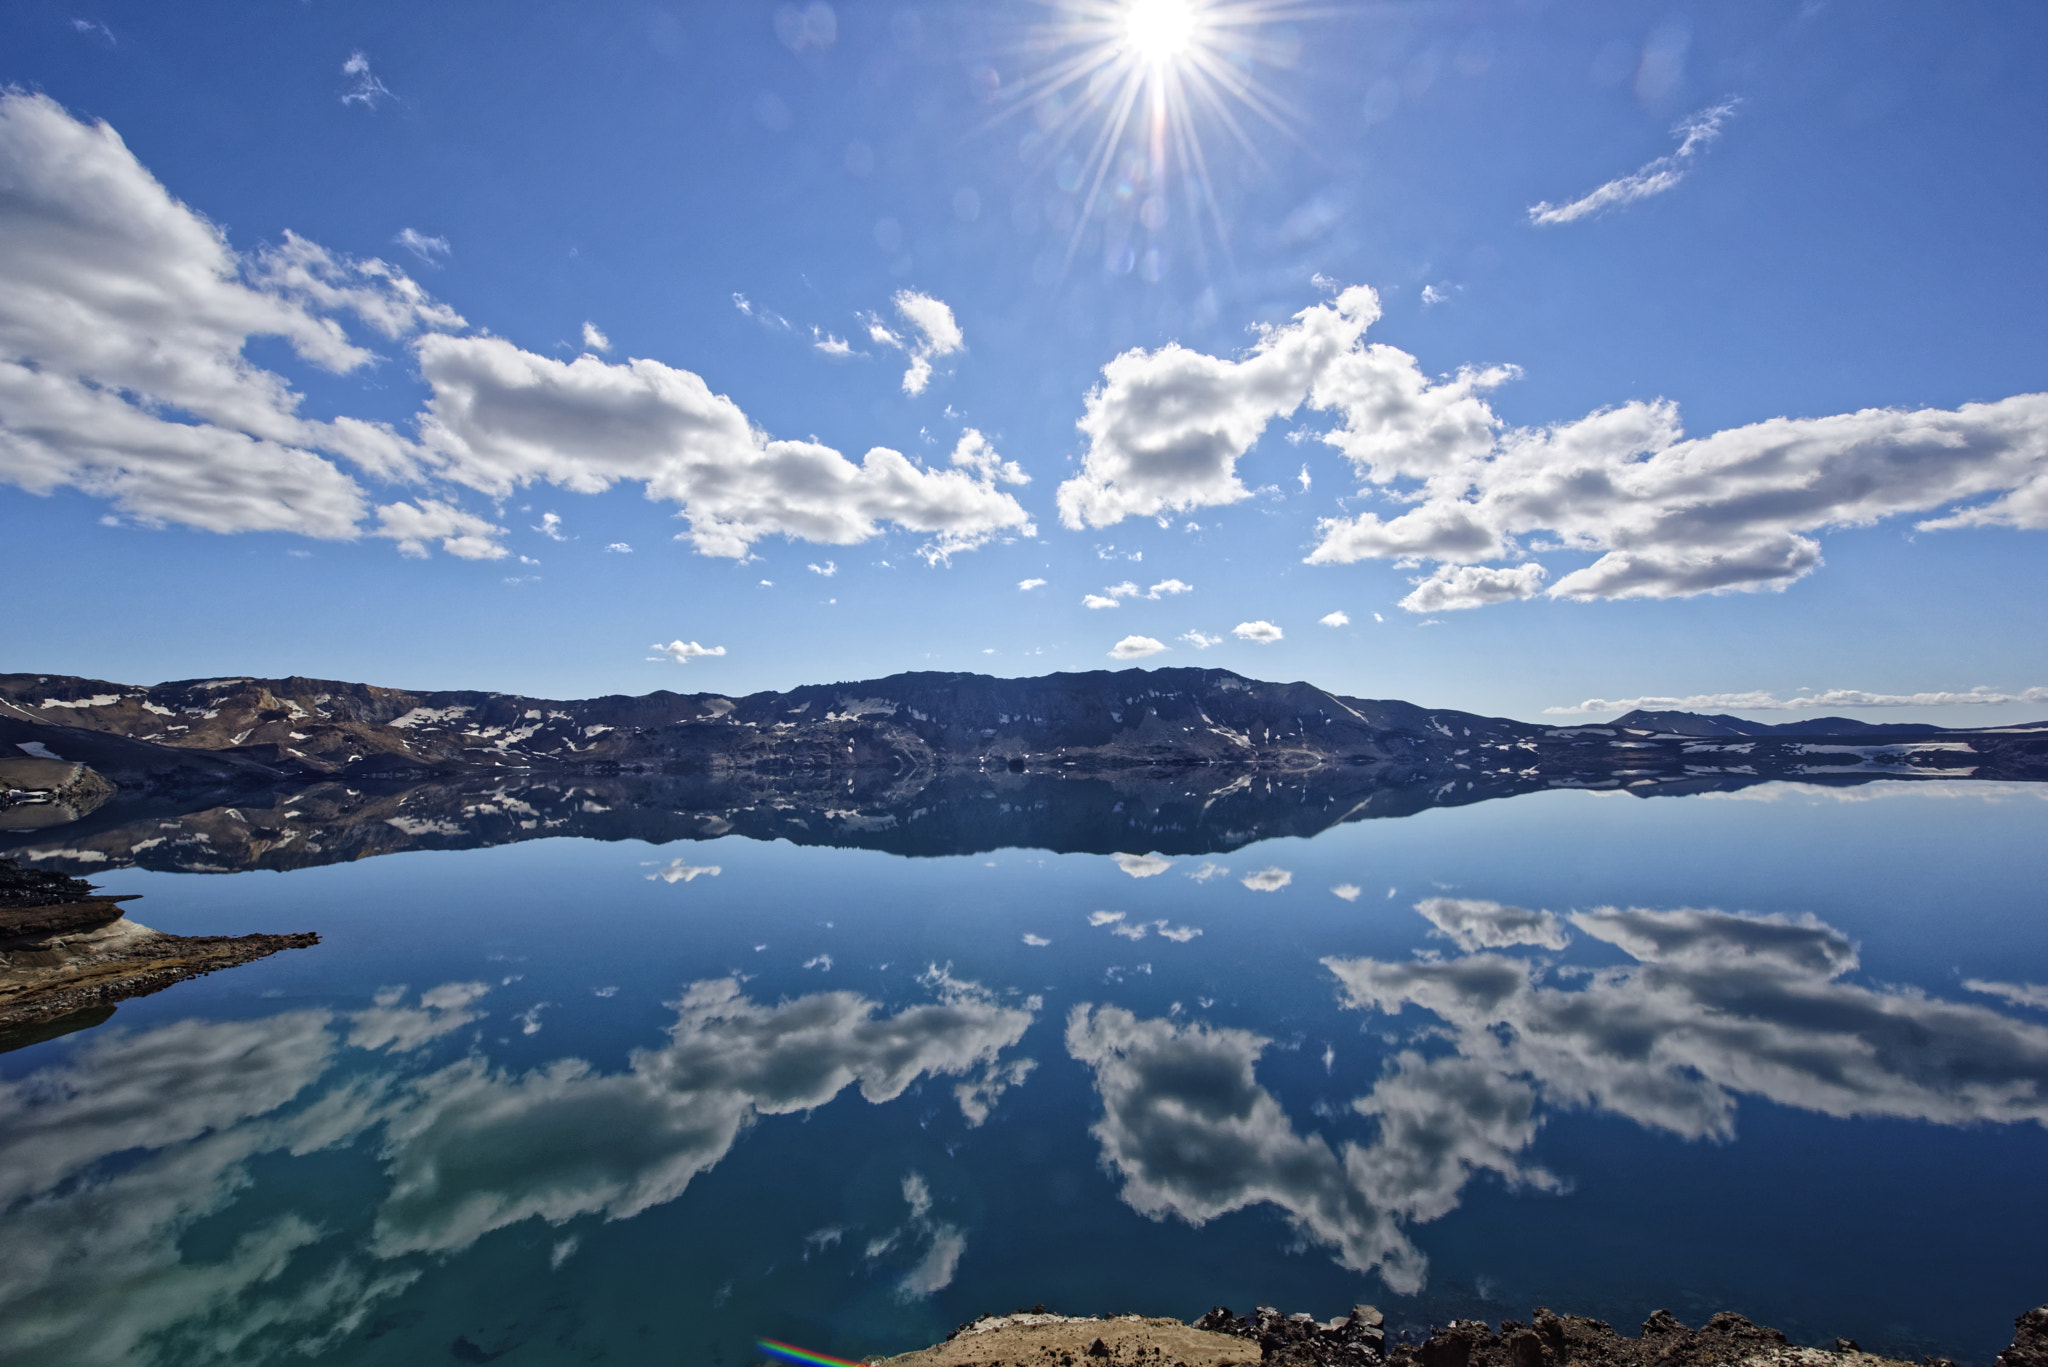 Nikon AF-S Nikkor 14-24mm F2.8G ED sample photo. The lake oskjuvatn in the highlands of iceland. photography